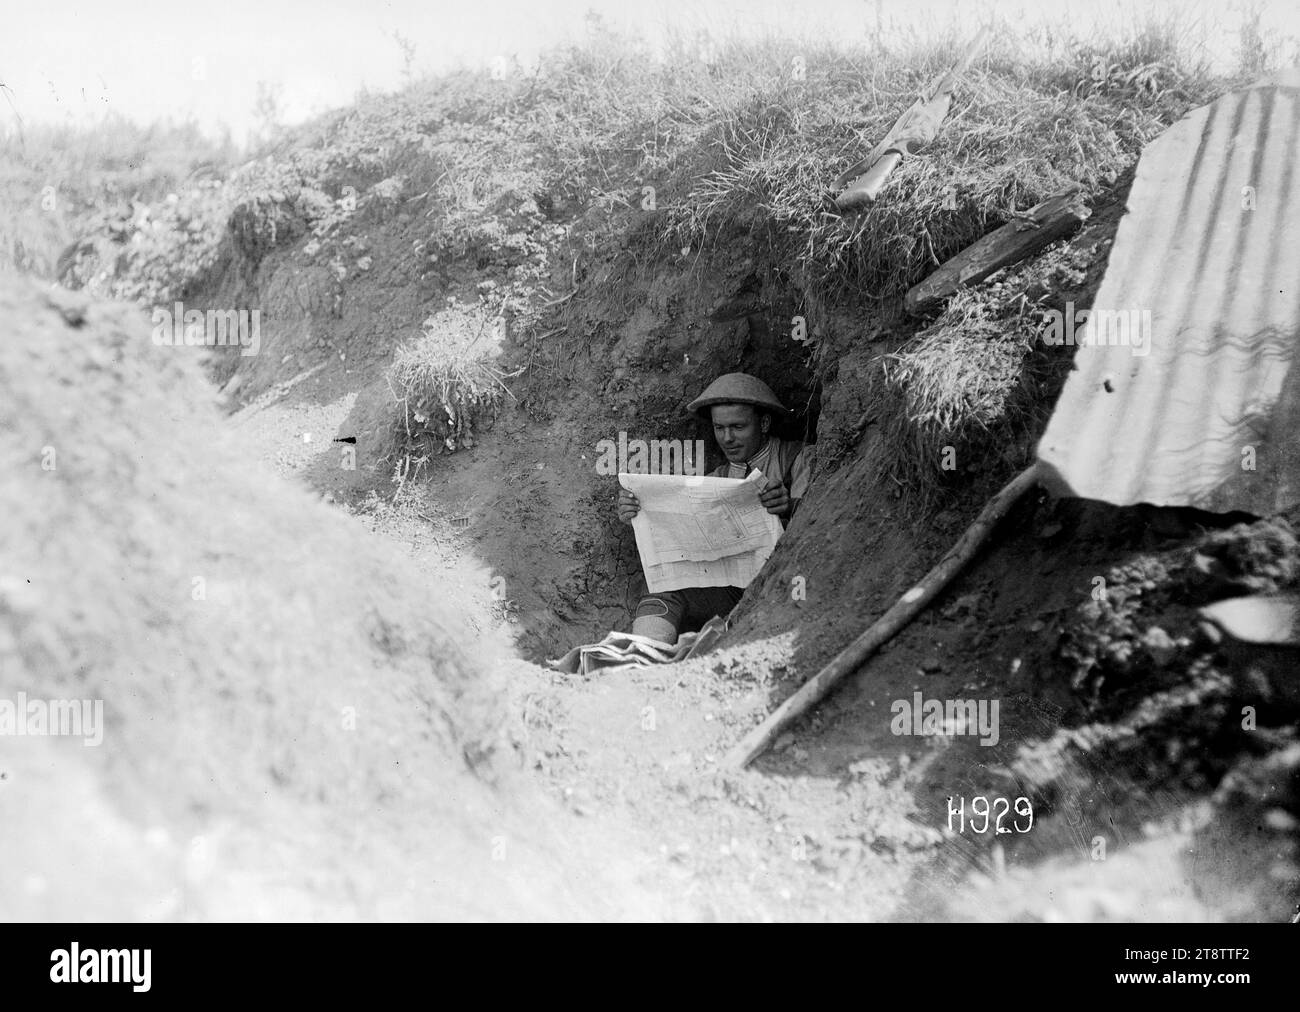 Ein neuseeländischer Soldat liest eine Zeitung in einem gefangengenommenen deutschen Graben, Frankreich, Ein neuseeländischer Soldat oder "Digger", der in einem Funk-Loch eines Grabens sitzt, der vor kurzem von den Deutschen gefangen genommen wurde. Der Soldat liest eine neuseeländische Zeitung. Ein Gewehr liegt auf dem Gras darüber. Foto: Puisieux am 21. August 1918 Stockfoto